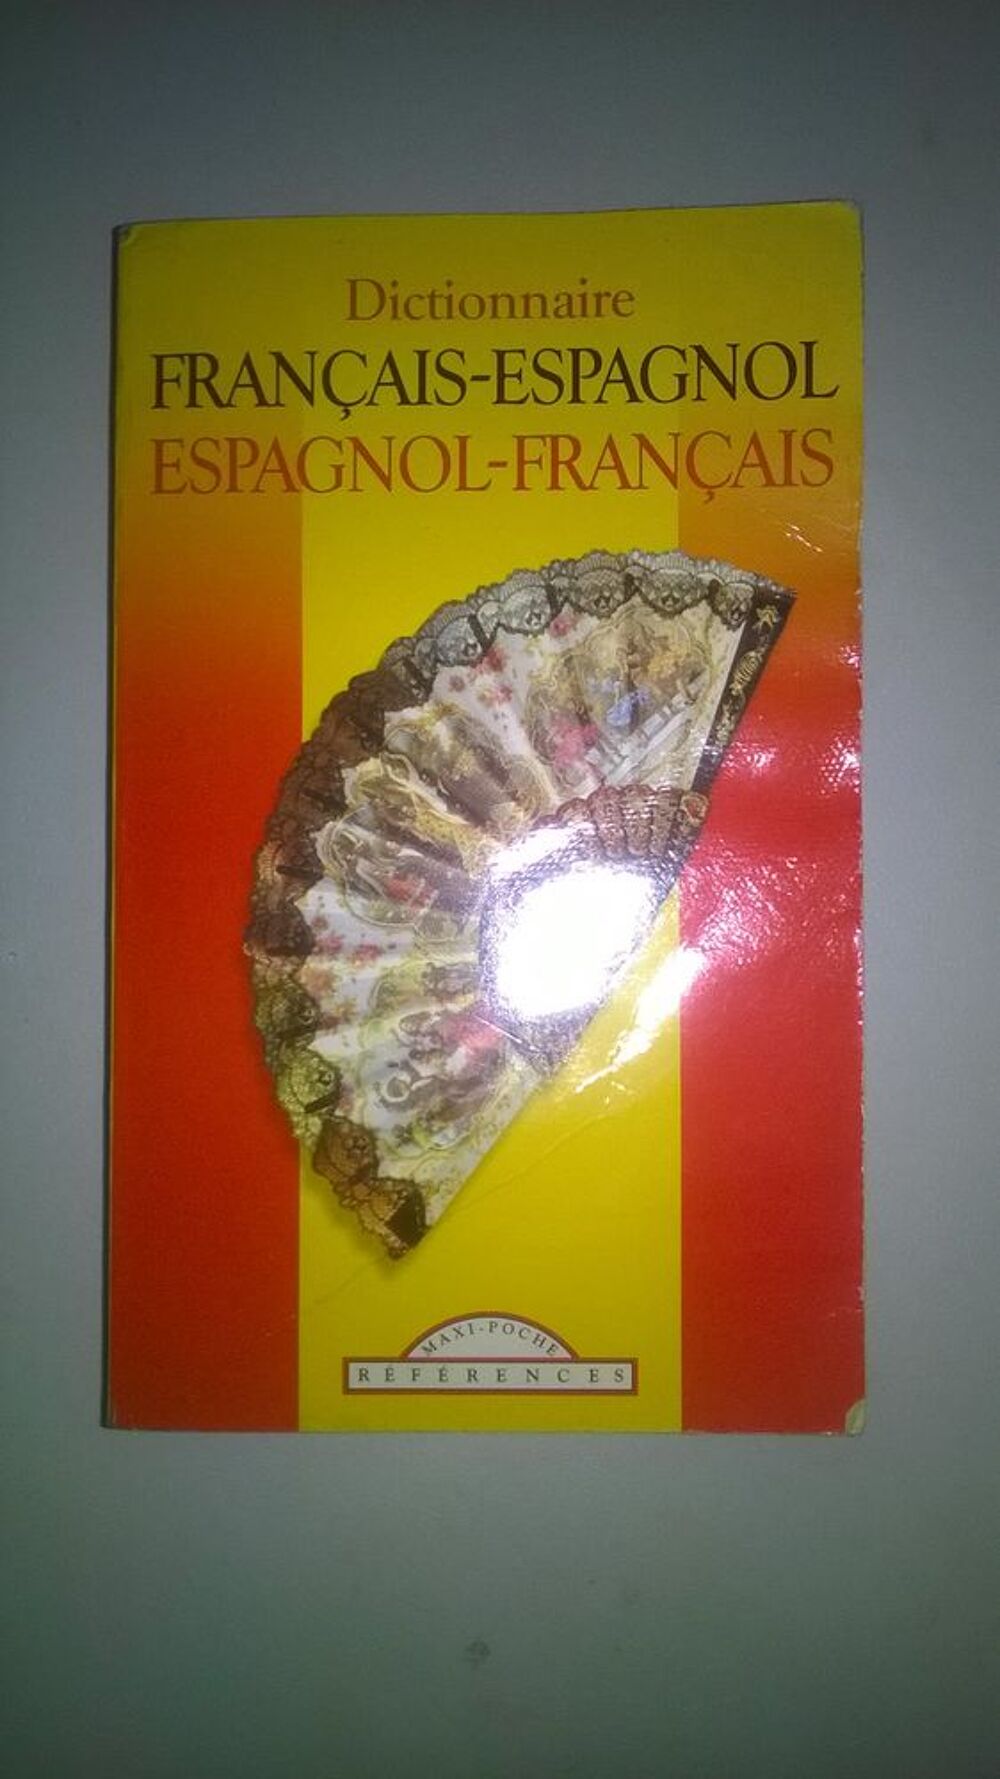 Dictionnaire fran&ccedil;ais/espagnol (Broch&eacute;)
Maxi poche
Livres et BD